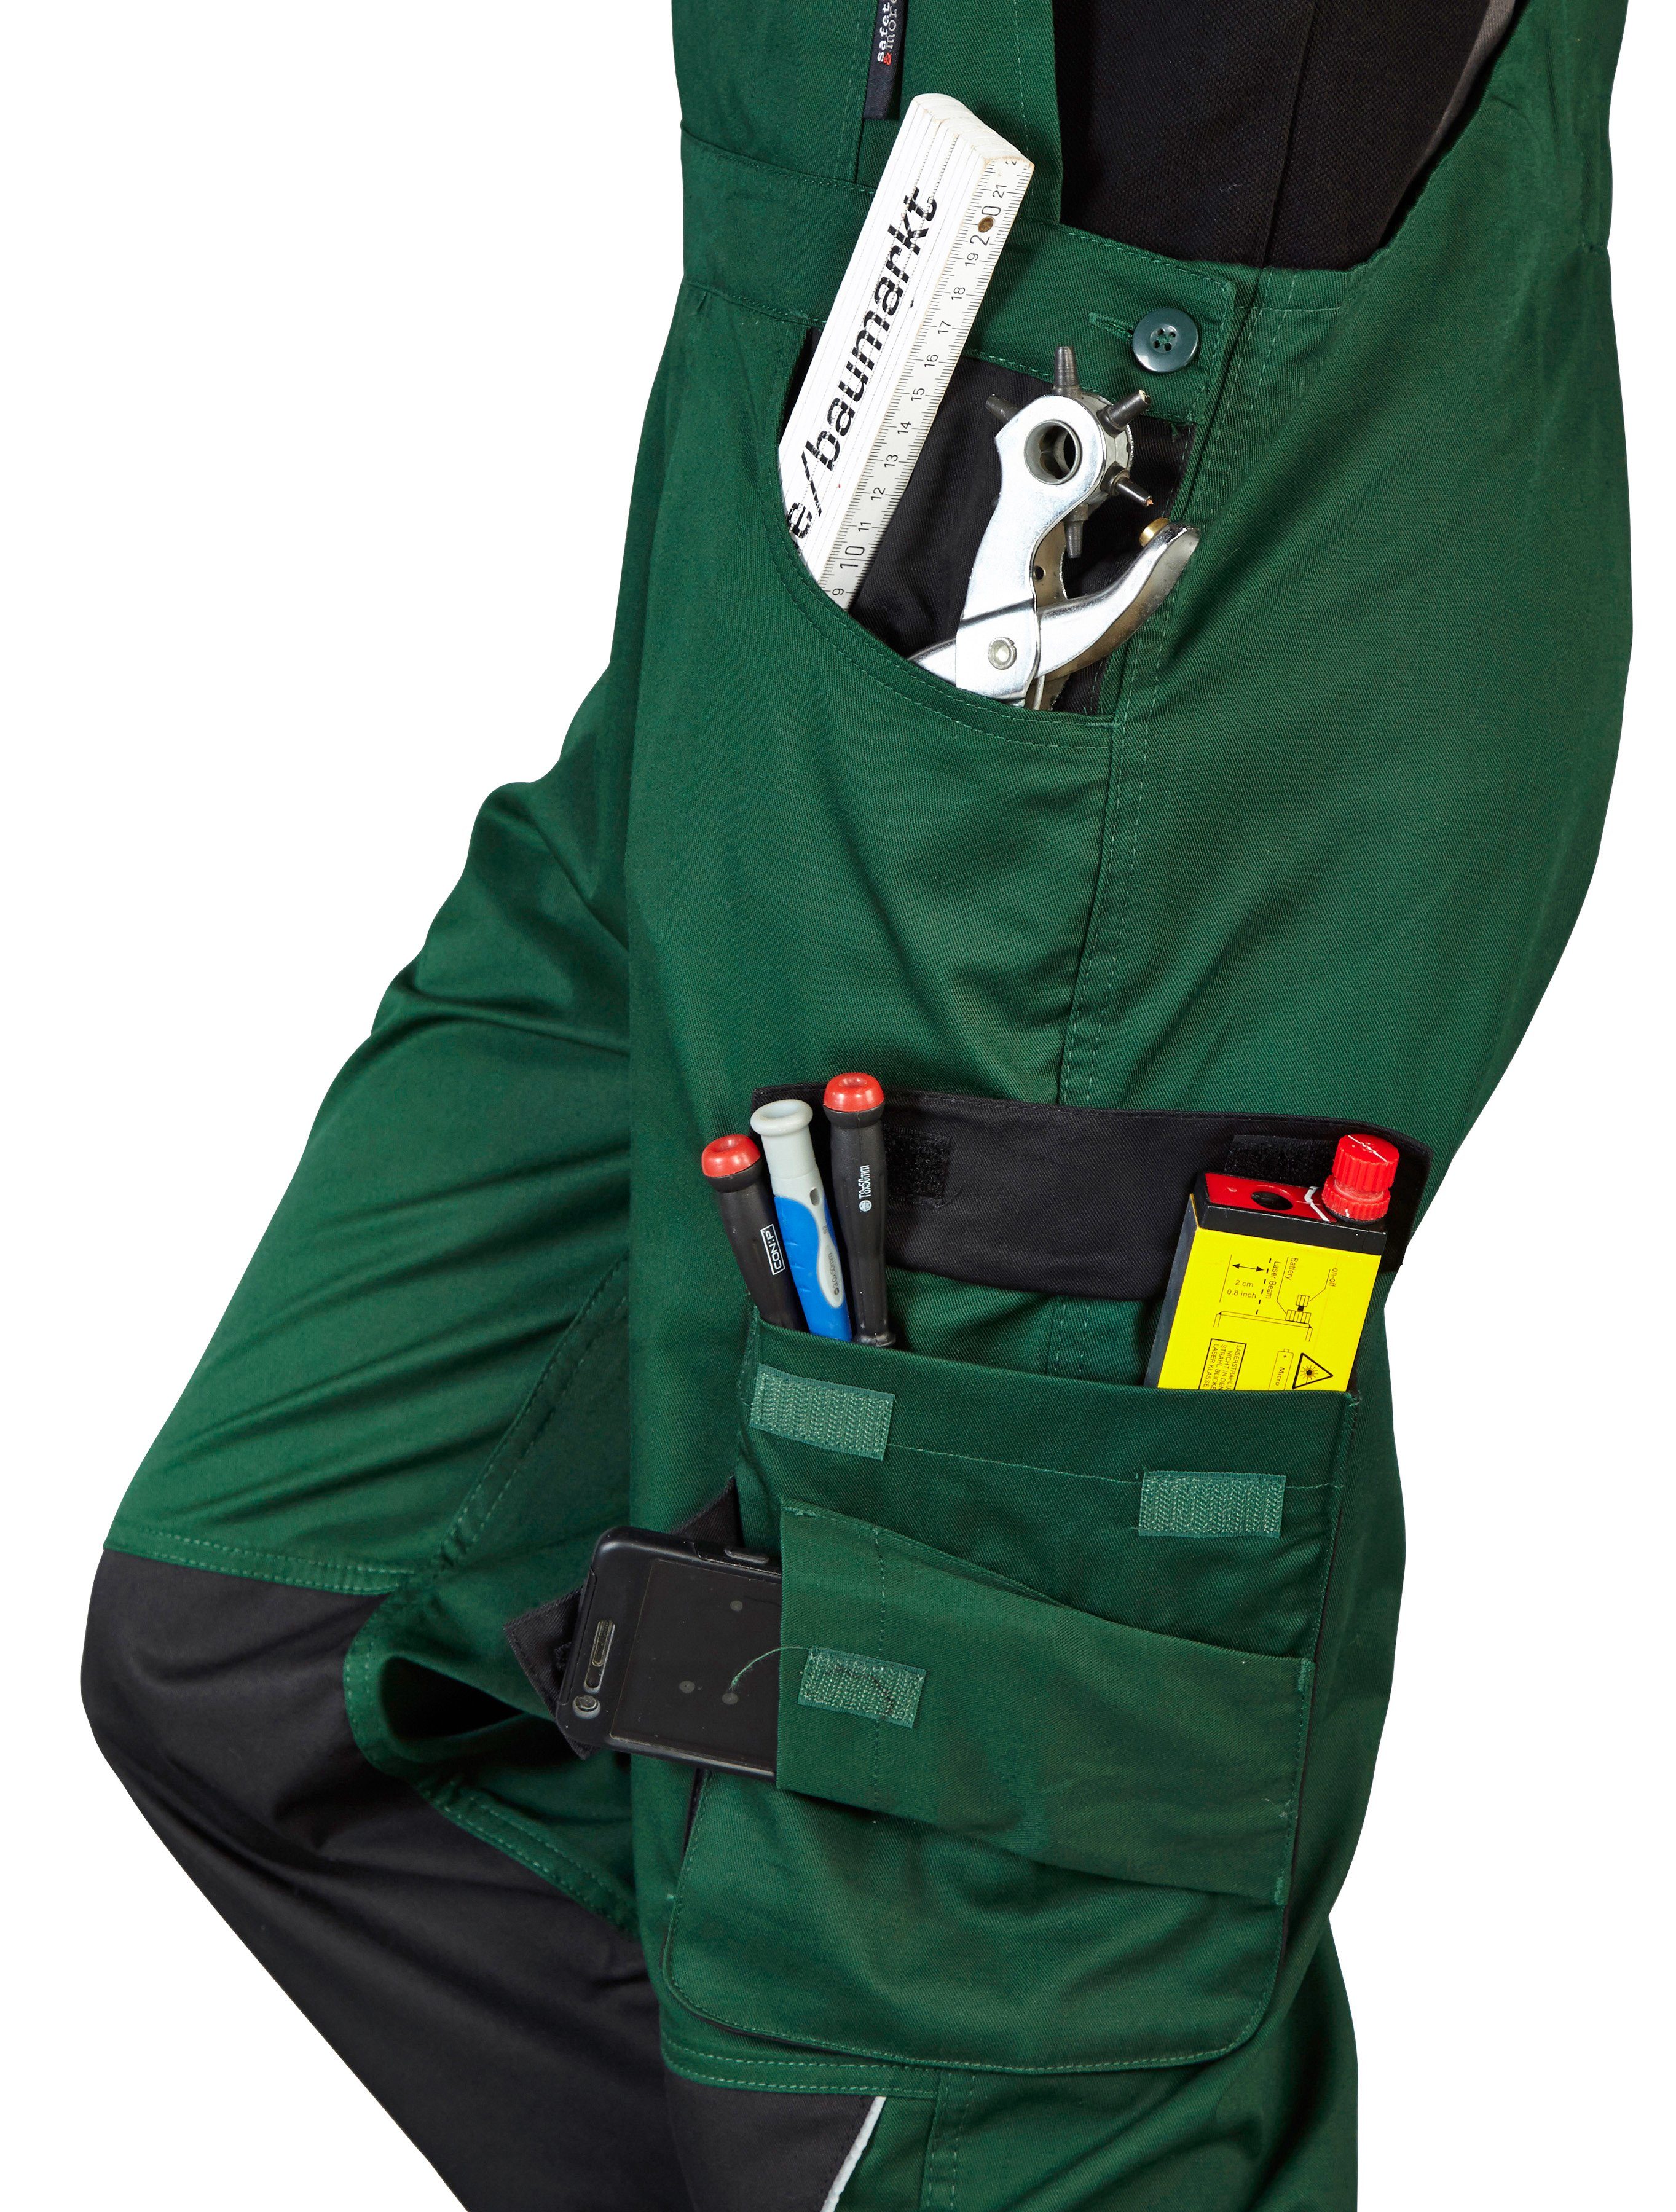 more safety& mit Reflexeinsätzen grün-schwarz Latzhose Pull